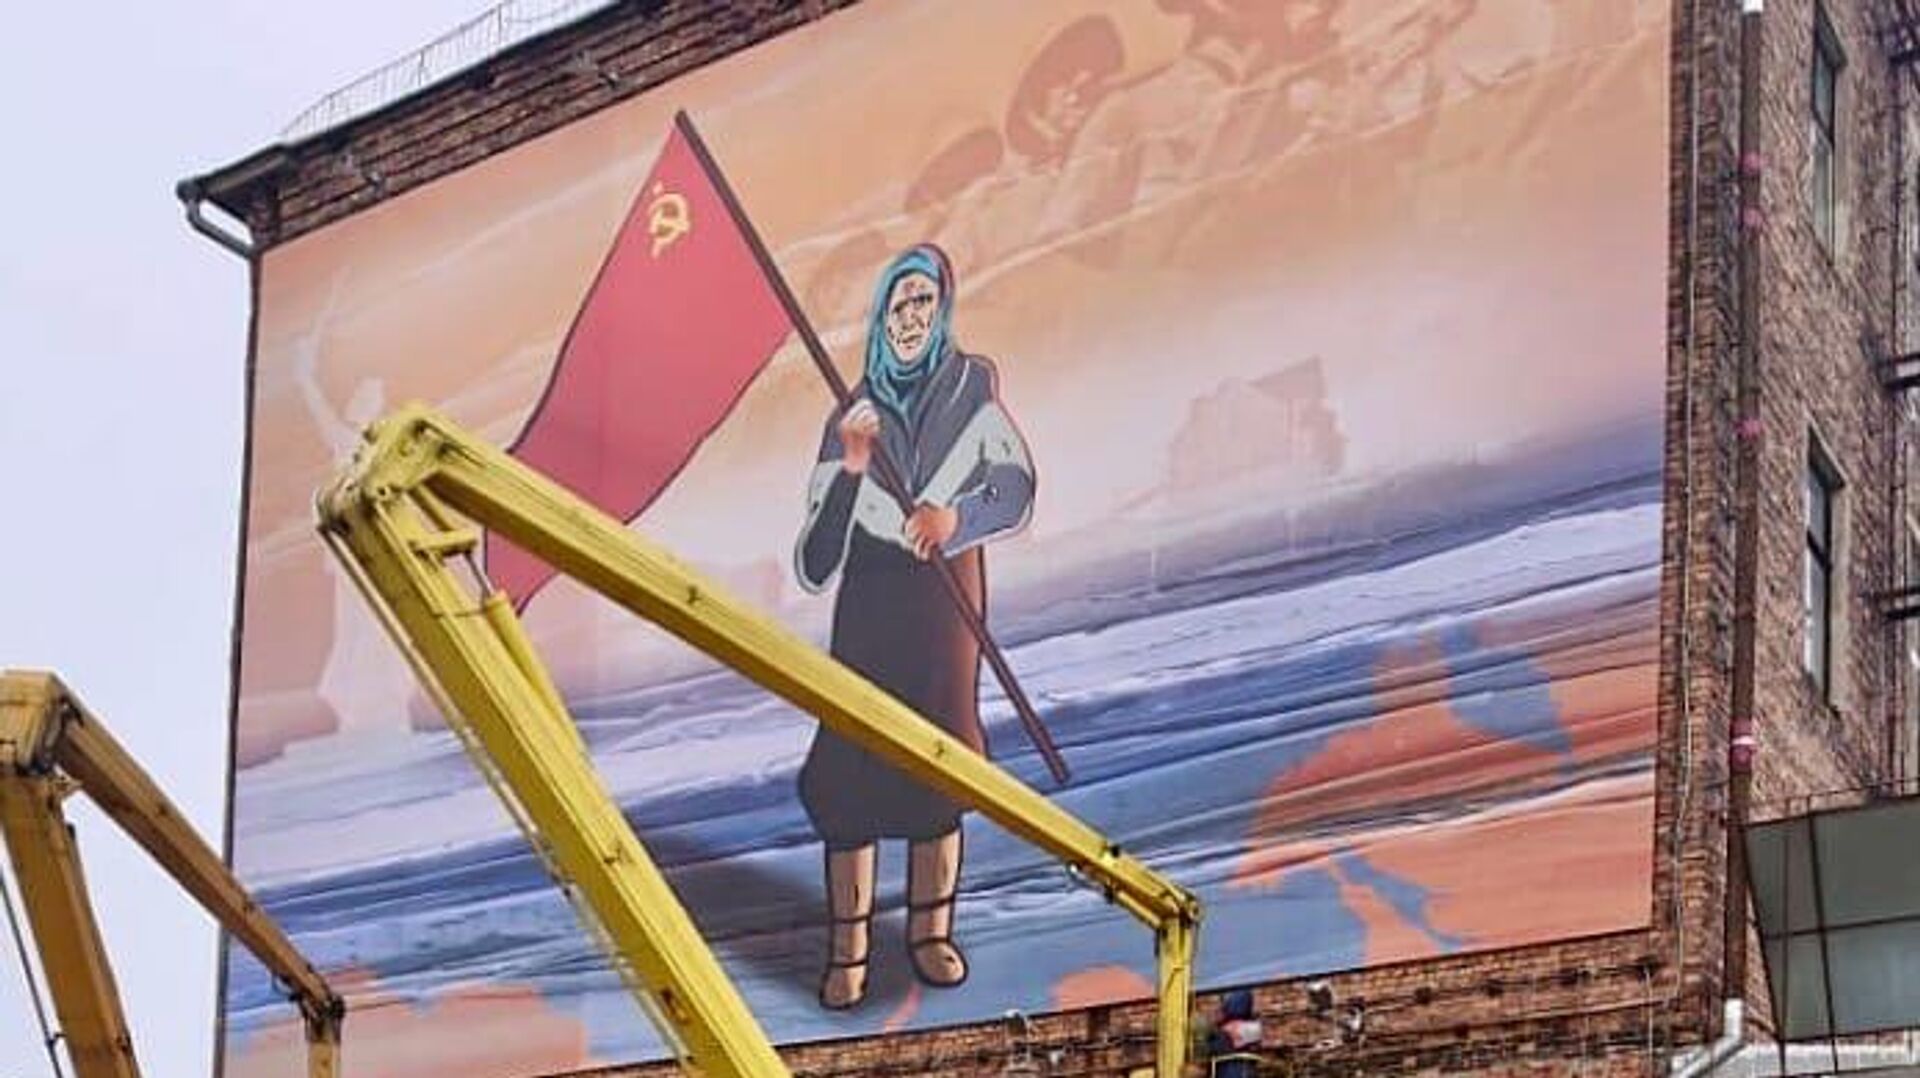 Баннер с изображением украинской бабушки, которая вышла с советским флагом к украинским военным и отказалась обменять знамя на продукты, в Петрозаводске - РИА Новости, 1920, 30.04.2022